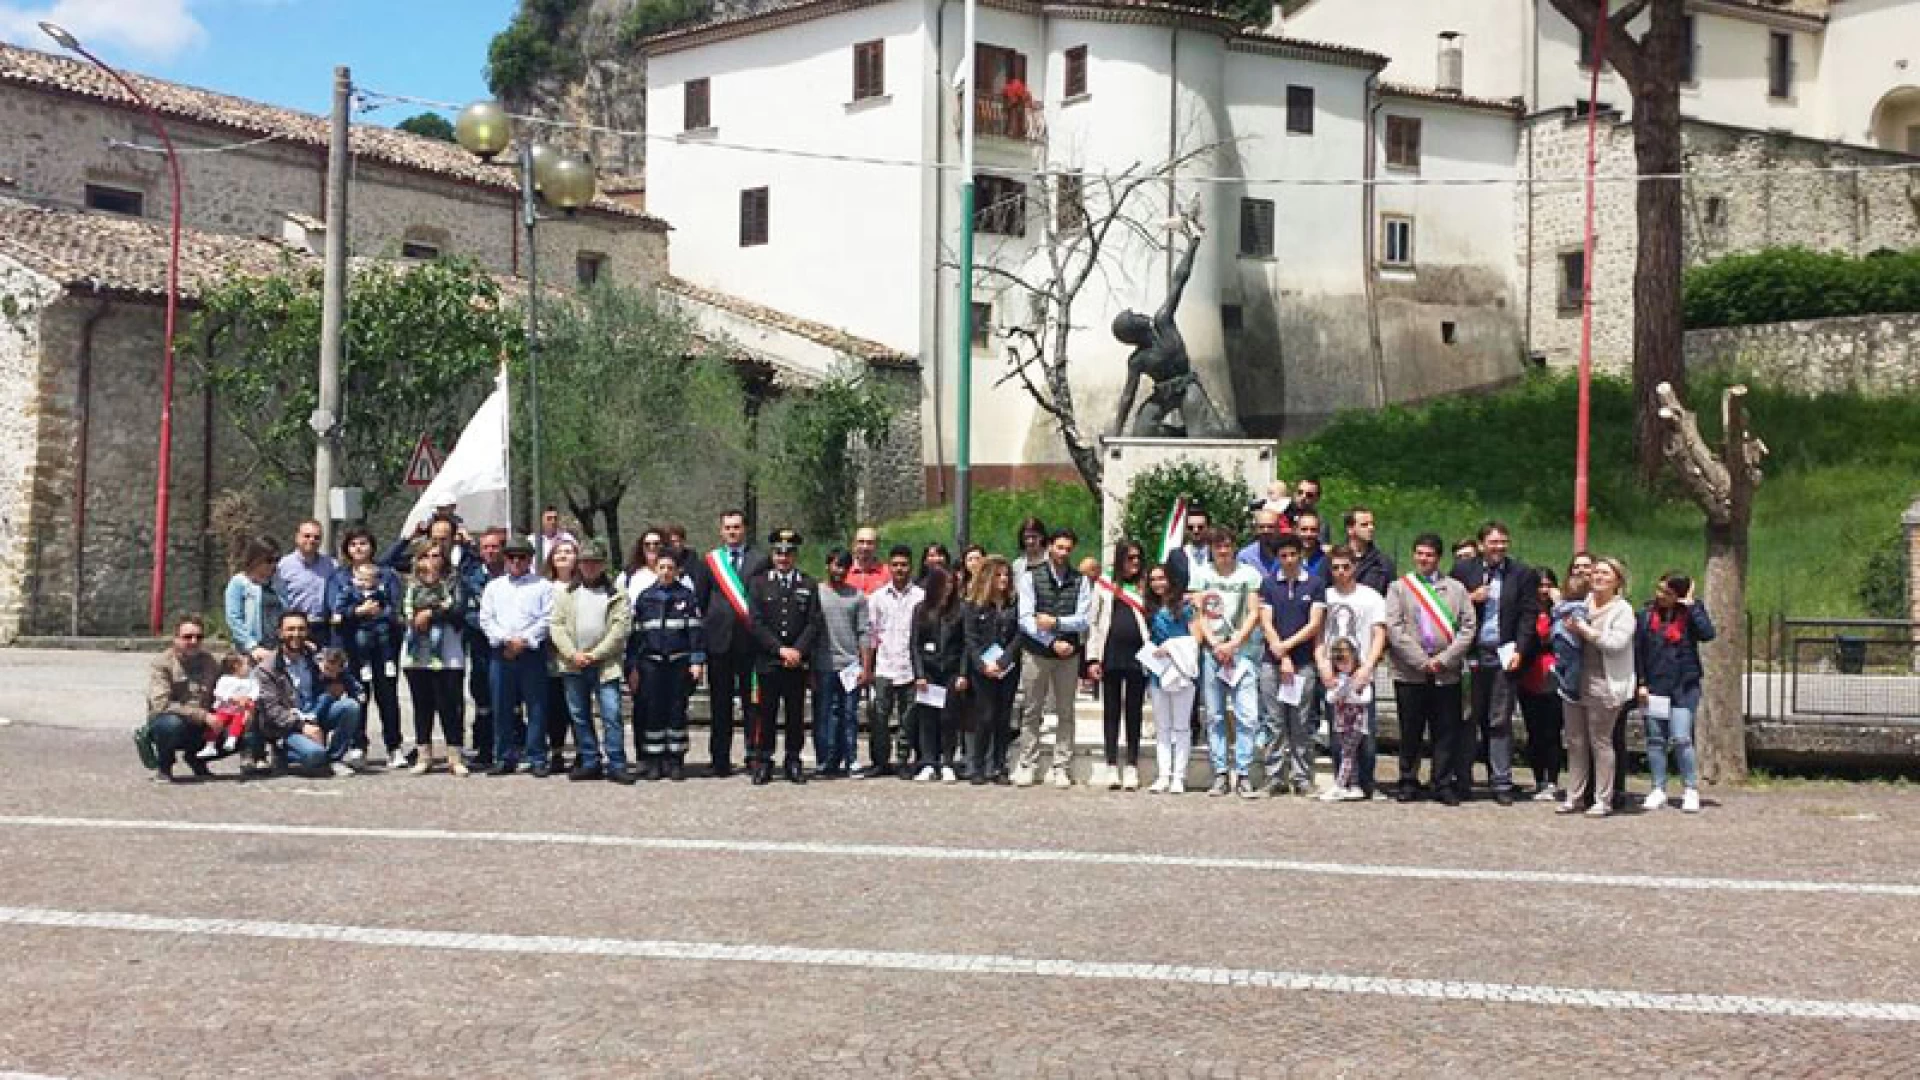 Celebrazioni del 2 giugno, a Cerro al Volturno anche il Prefetto di Isernia Guida. Per i neo 18enni la consegna della Costituzione Italiana.